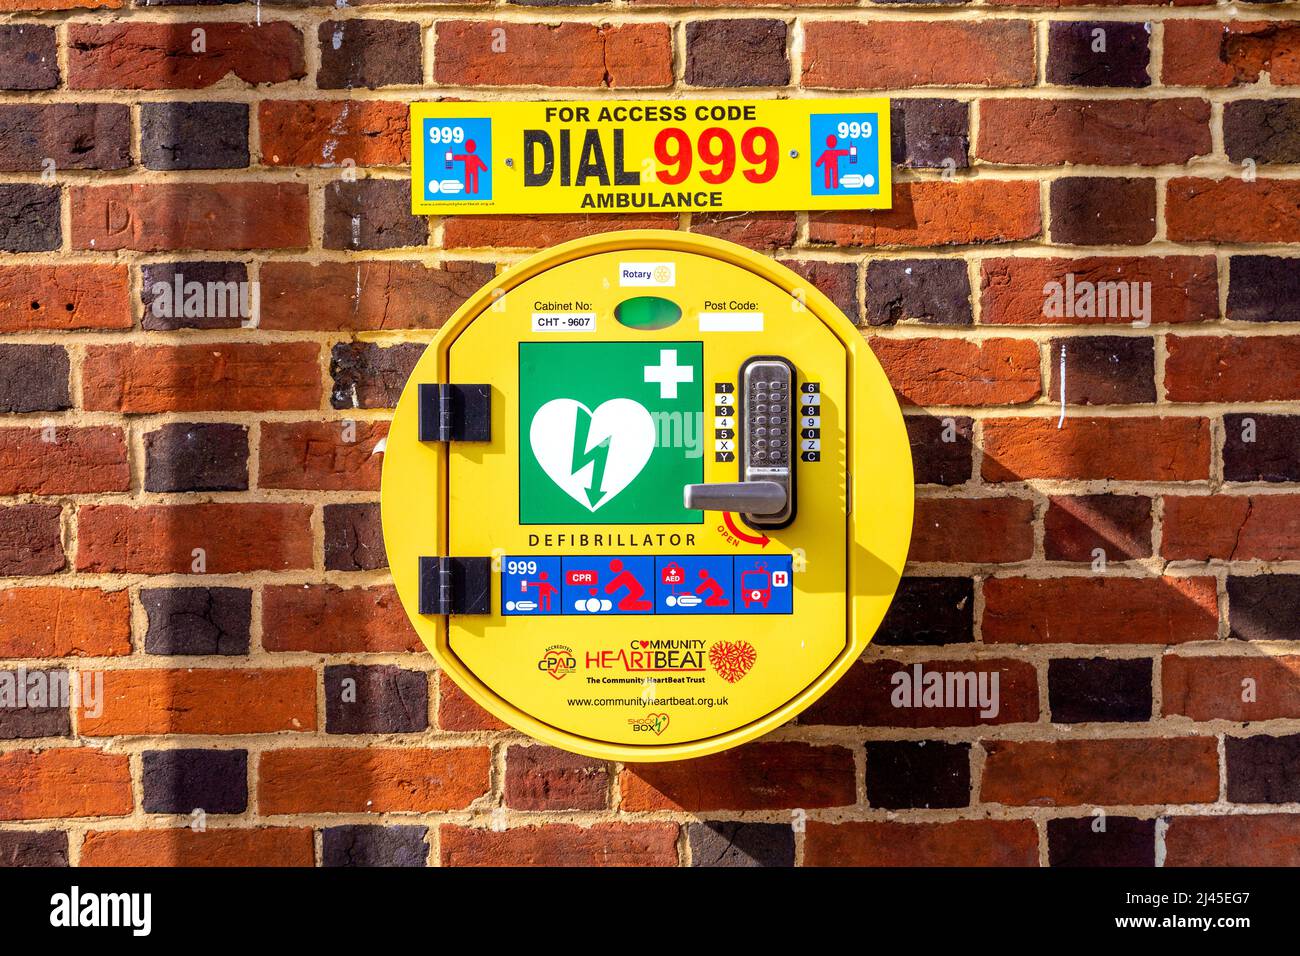 Code-verriegelter Notfall-Defibrillator an einer Ziegelwand montiert Stockfoto